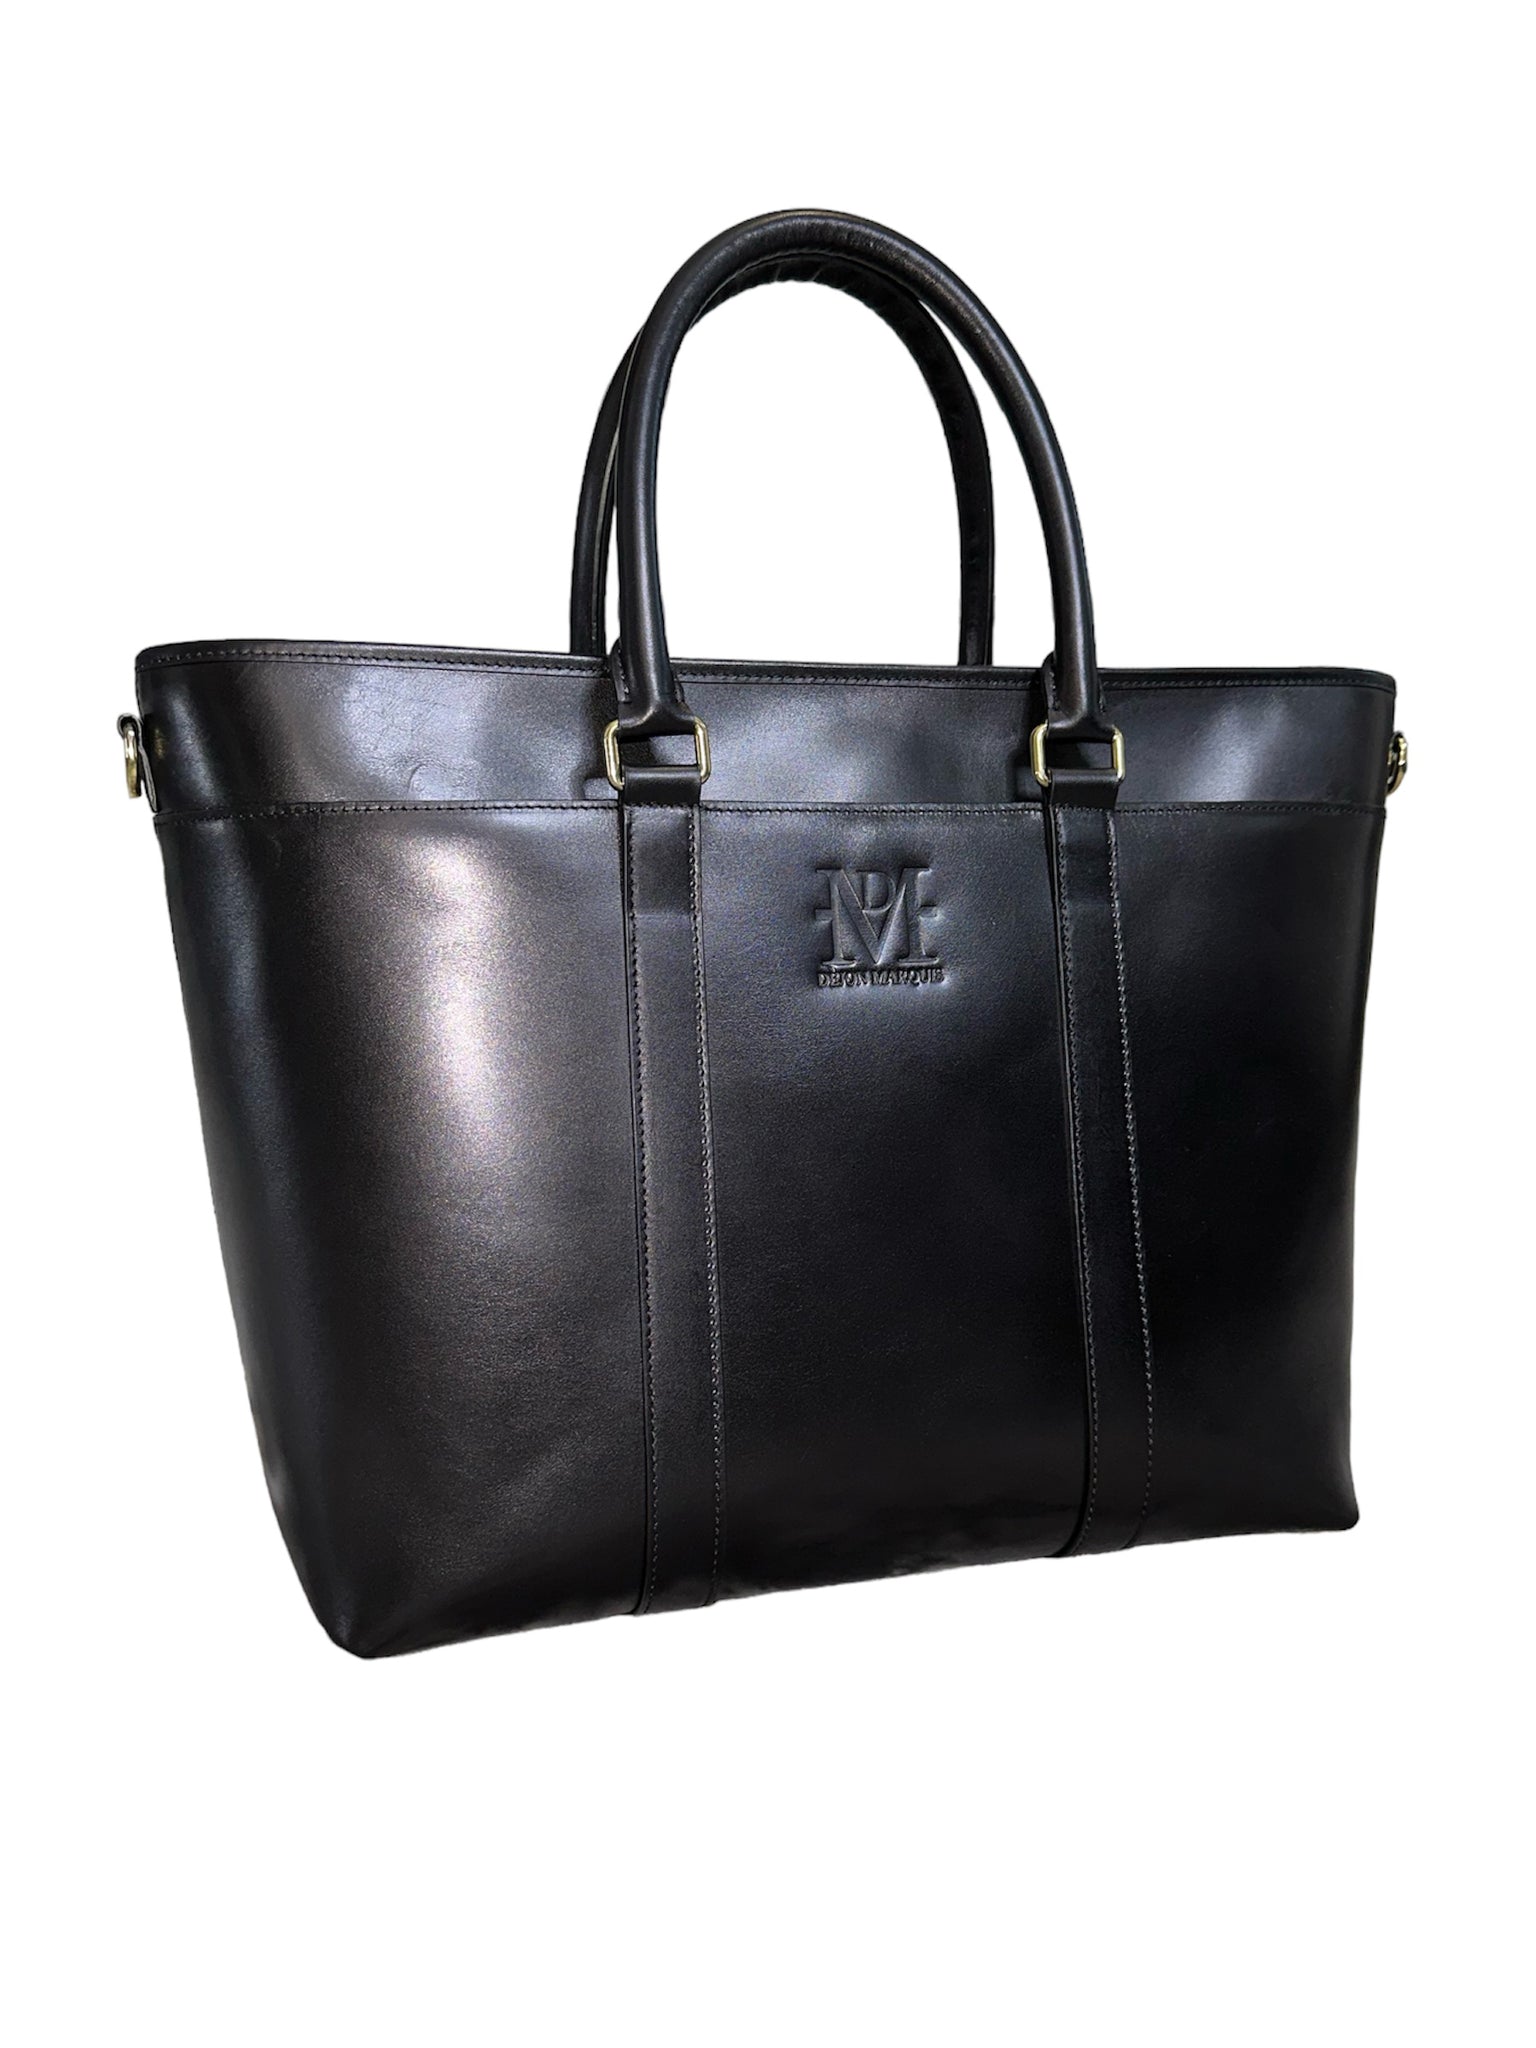 Dejon Marquis DM Leather Tote Bag